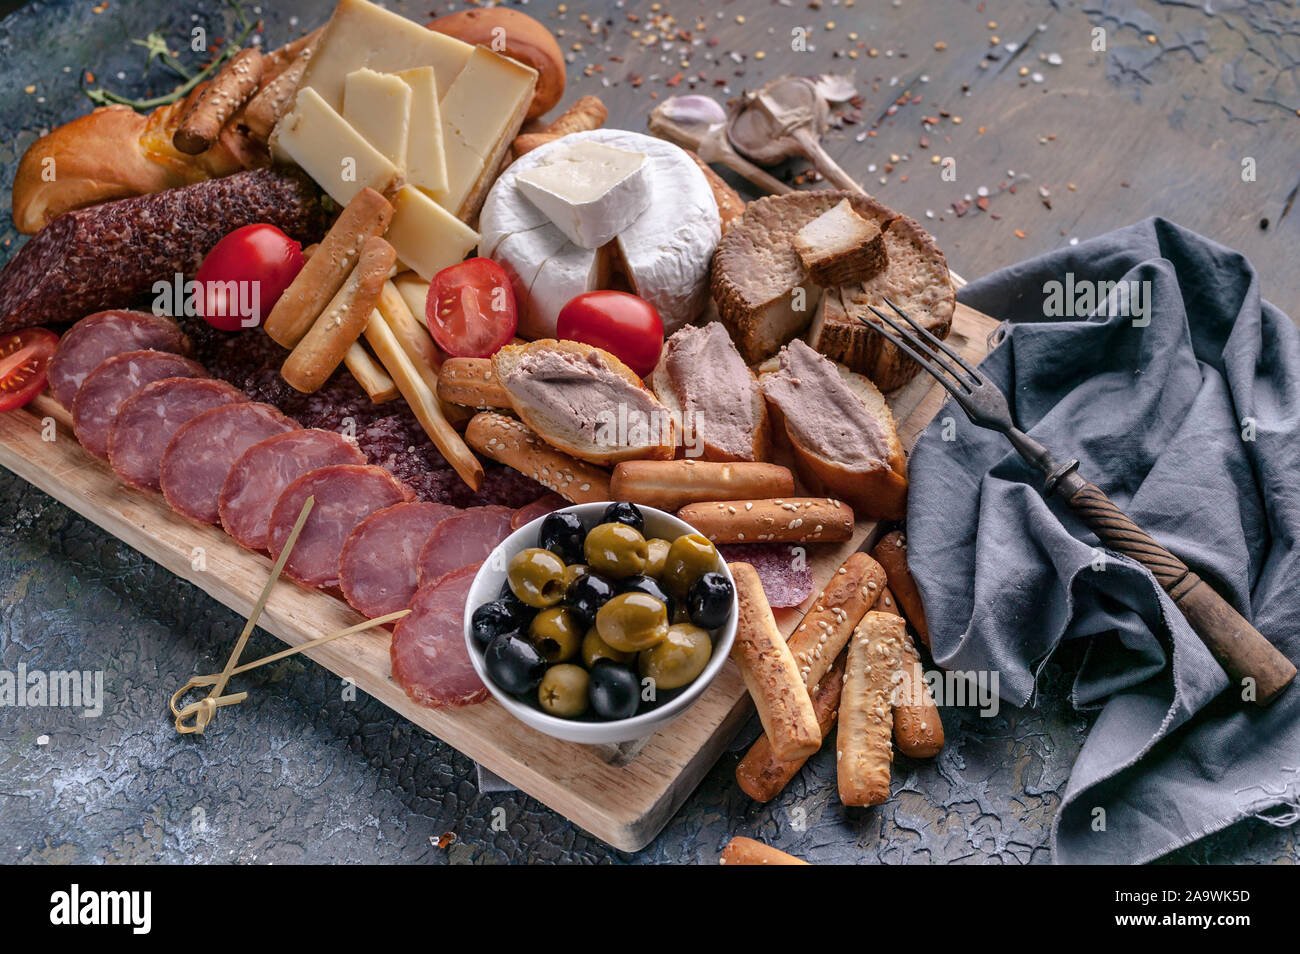 Verschiedene Käsesorten, geräucherte Fleisch- und Wurstwaren auf einem Schneidebrett. Mediterrane Speisen. Nahaufnahme Stockfoto